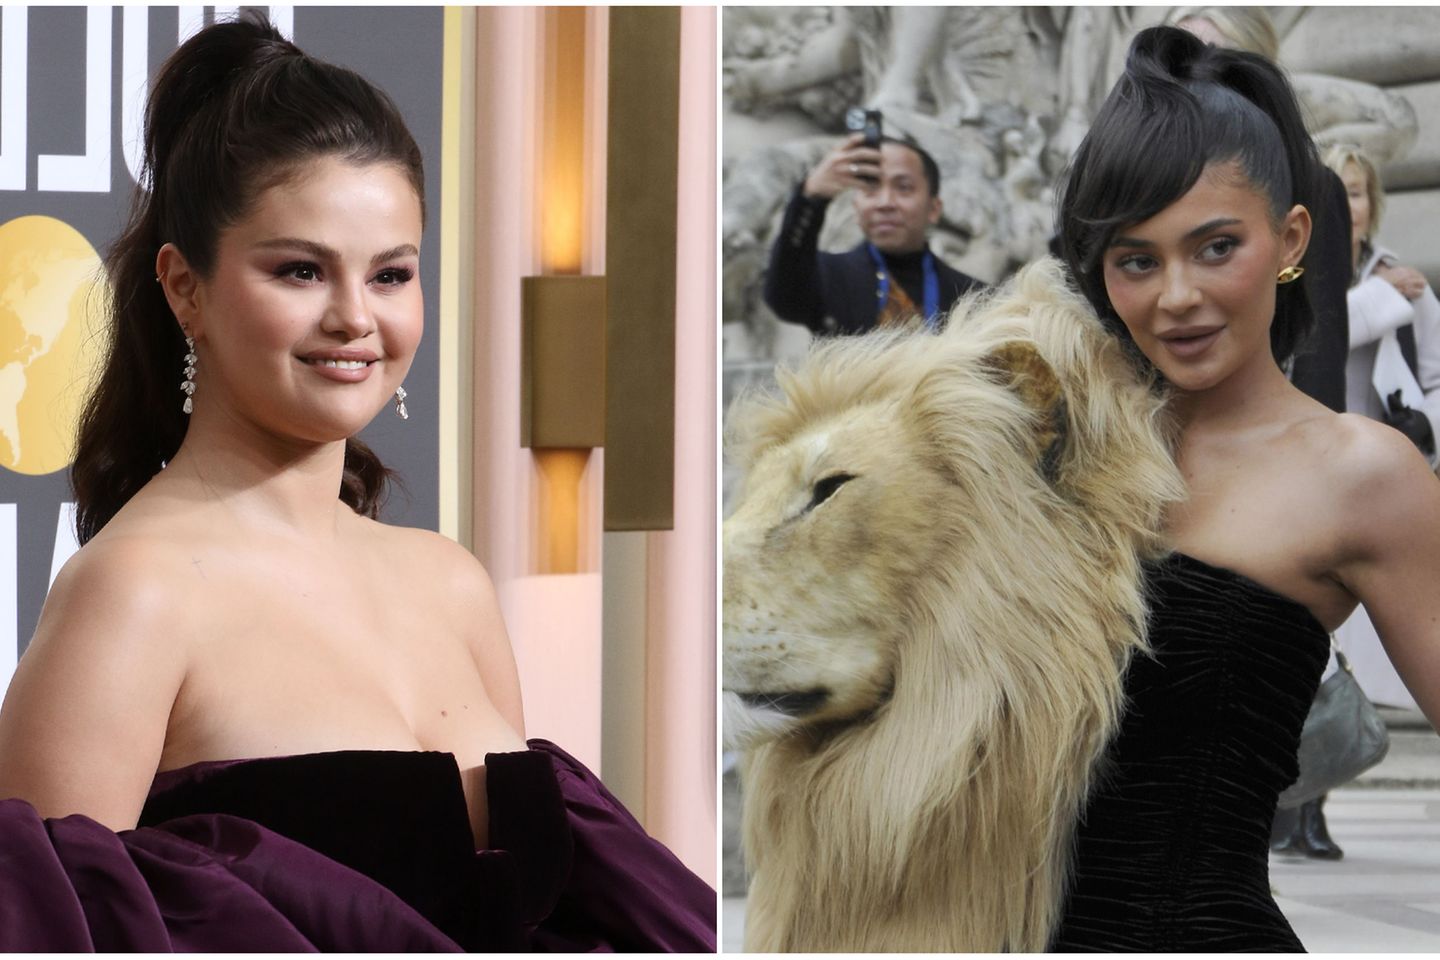 Collage aus 2 Bildern: Linkes Bild zeigt Selena Gomez auf dem roten Teppich der Golden Globe Awards 2023, das rechte Bild zeigt Kylie Jenner auf der Paris Fashion Week